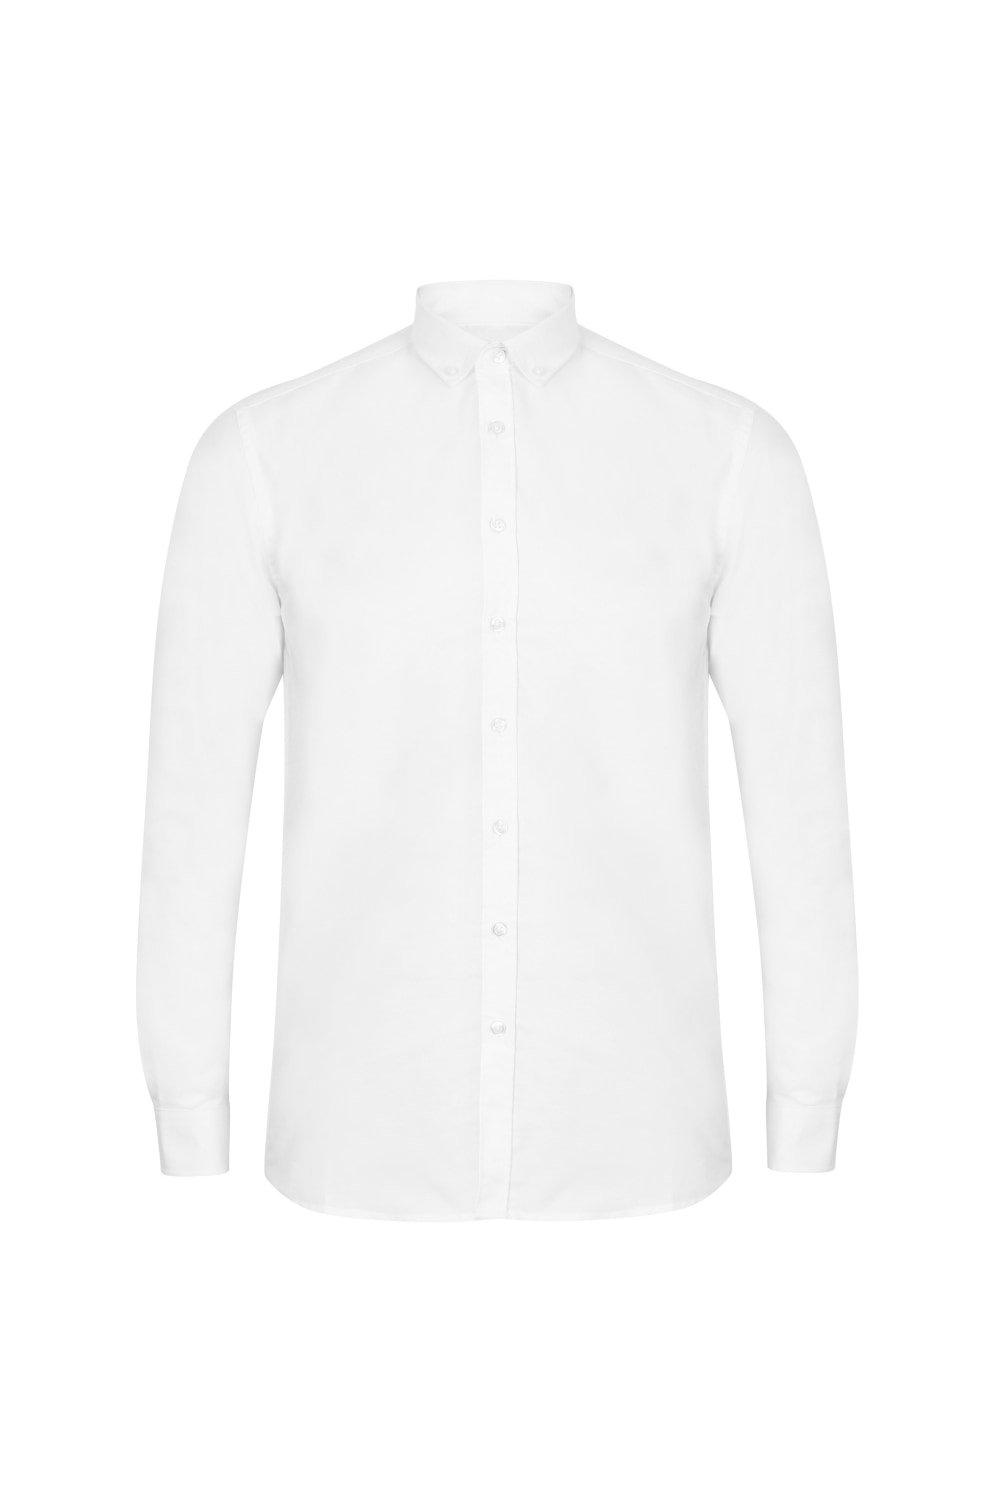 Современная оксфордская рубашка с длинными рукавами Henbury, белый джемпер на пуговицах 44 размер